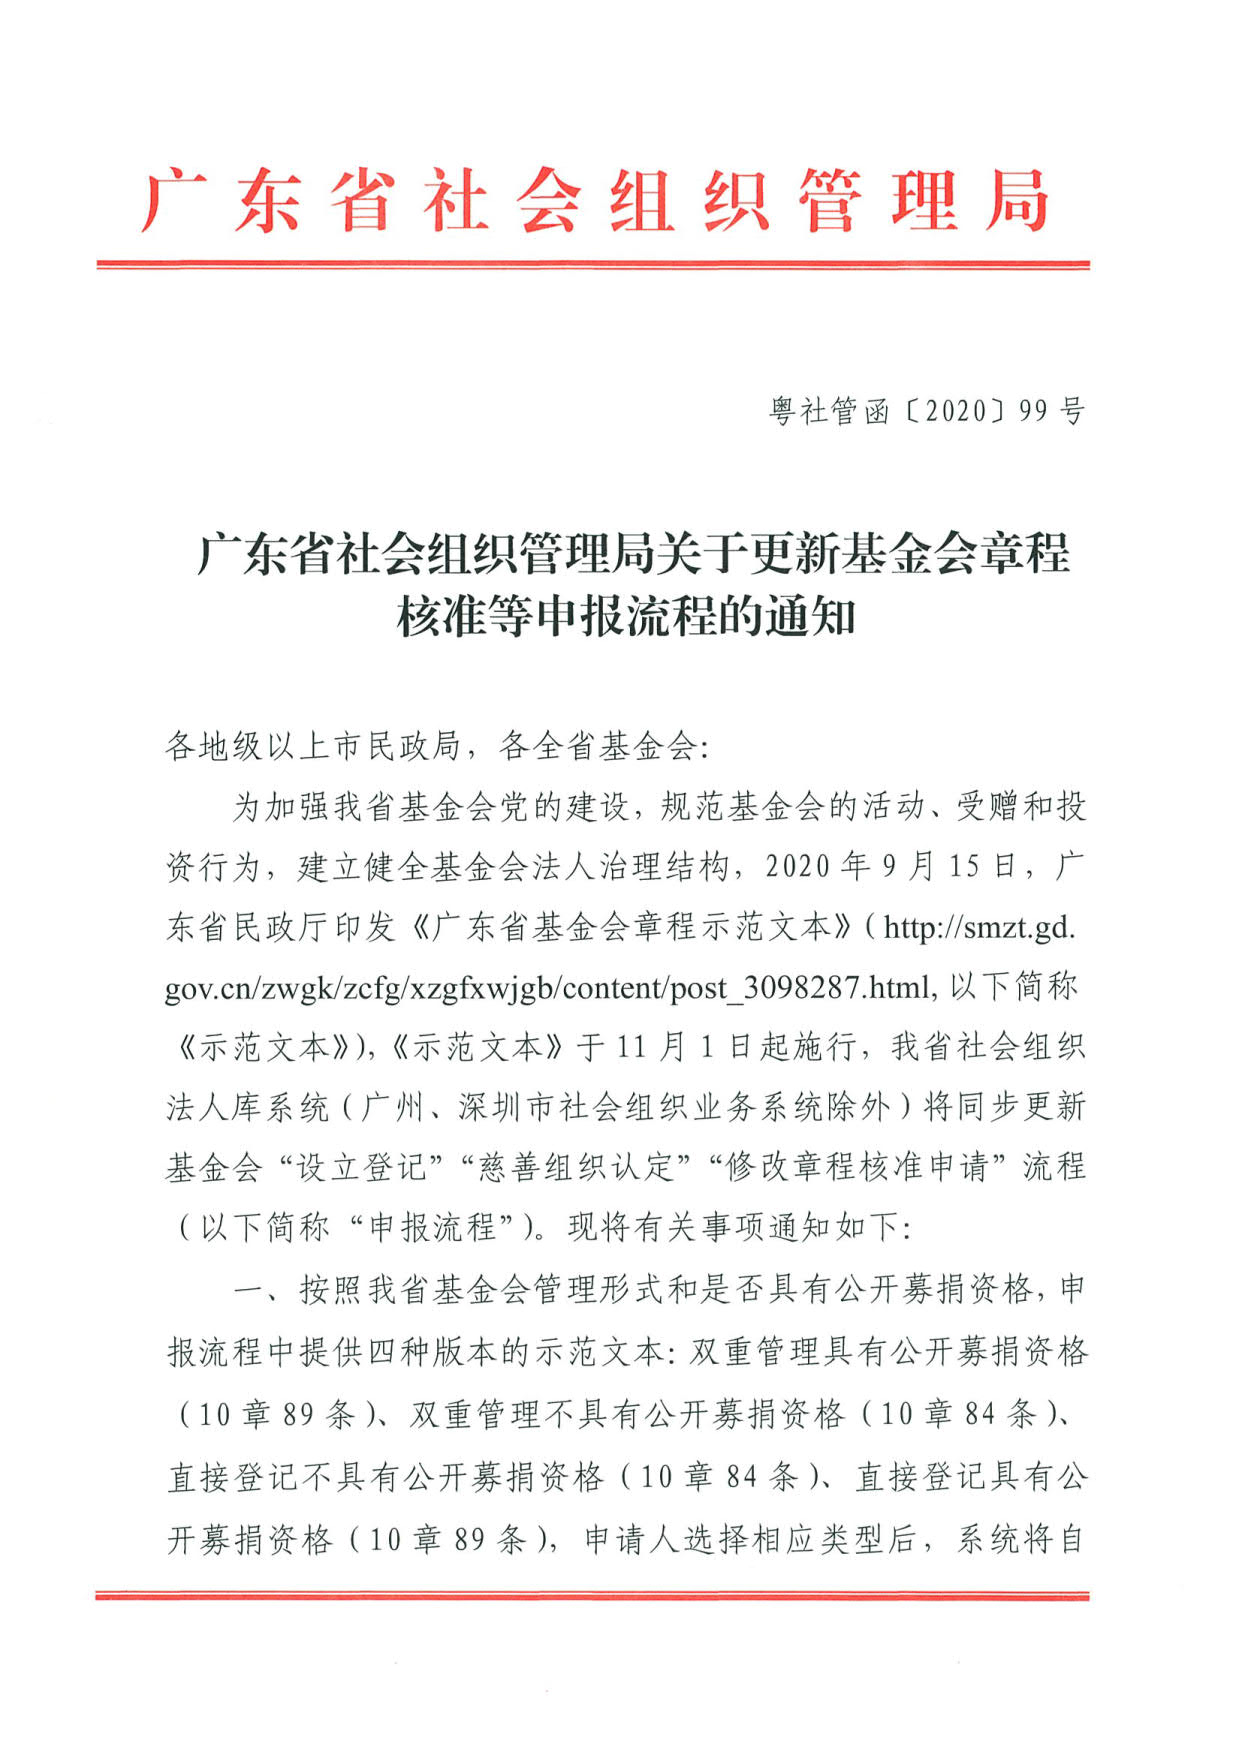 广东省社会组织管理局关于更新基金会章程核准等申报流程的通知(2)_1.jpg